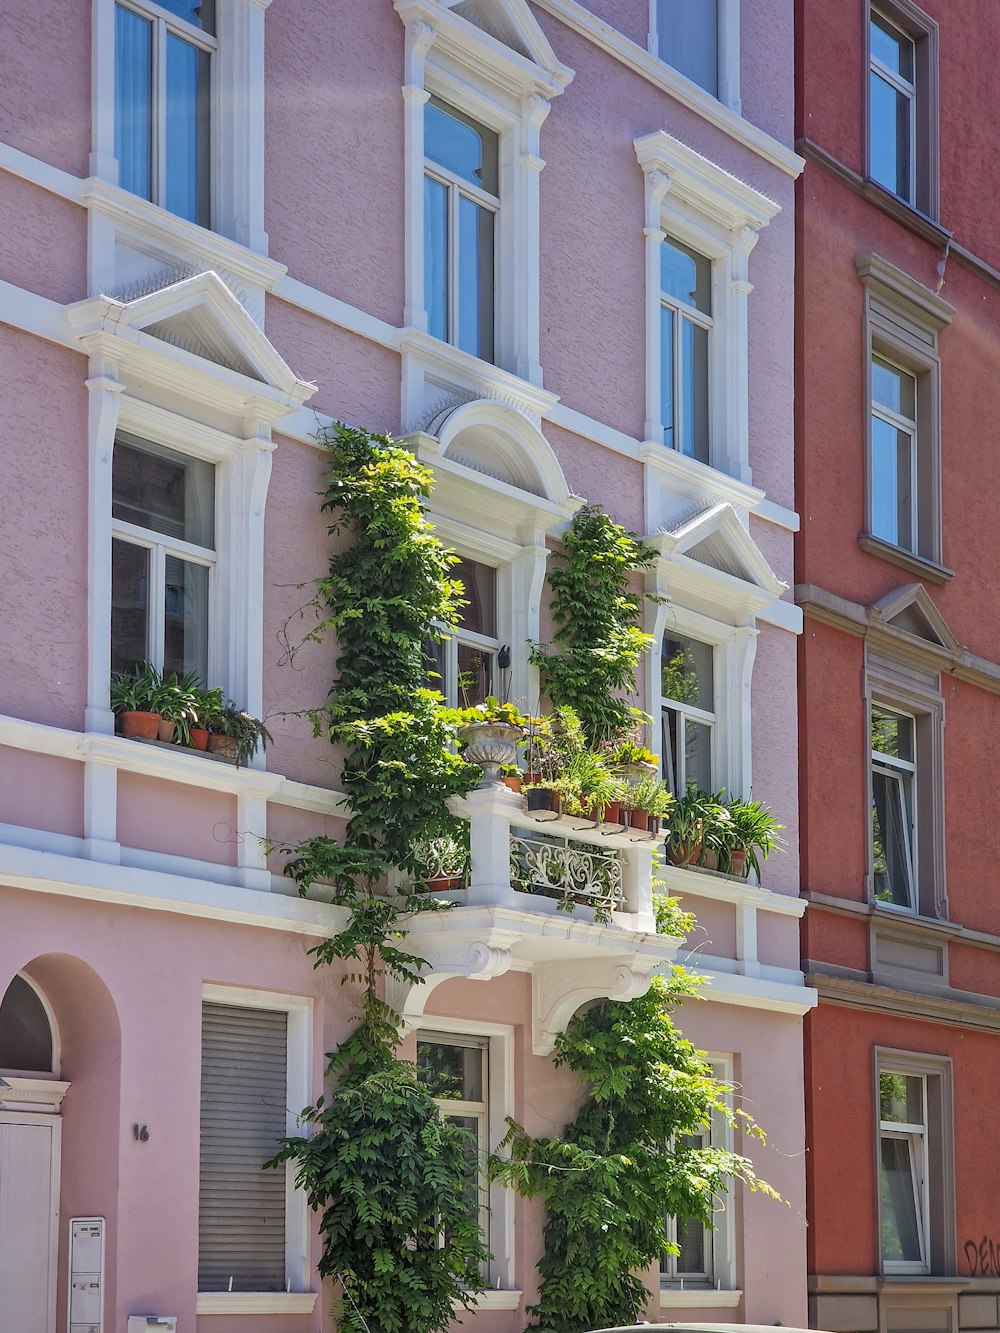 많은 창문과 식물이 자라는 분홍색 건물